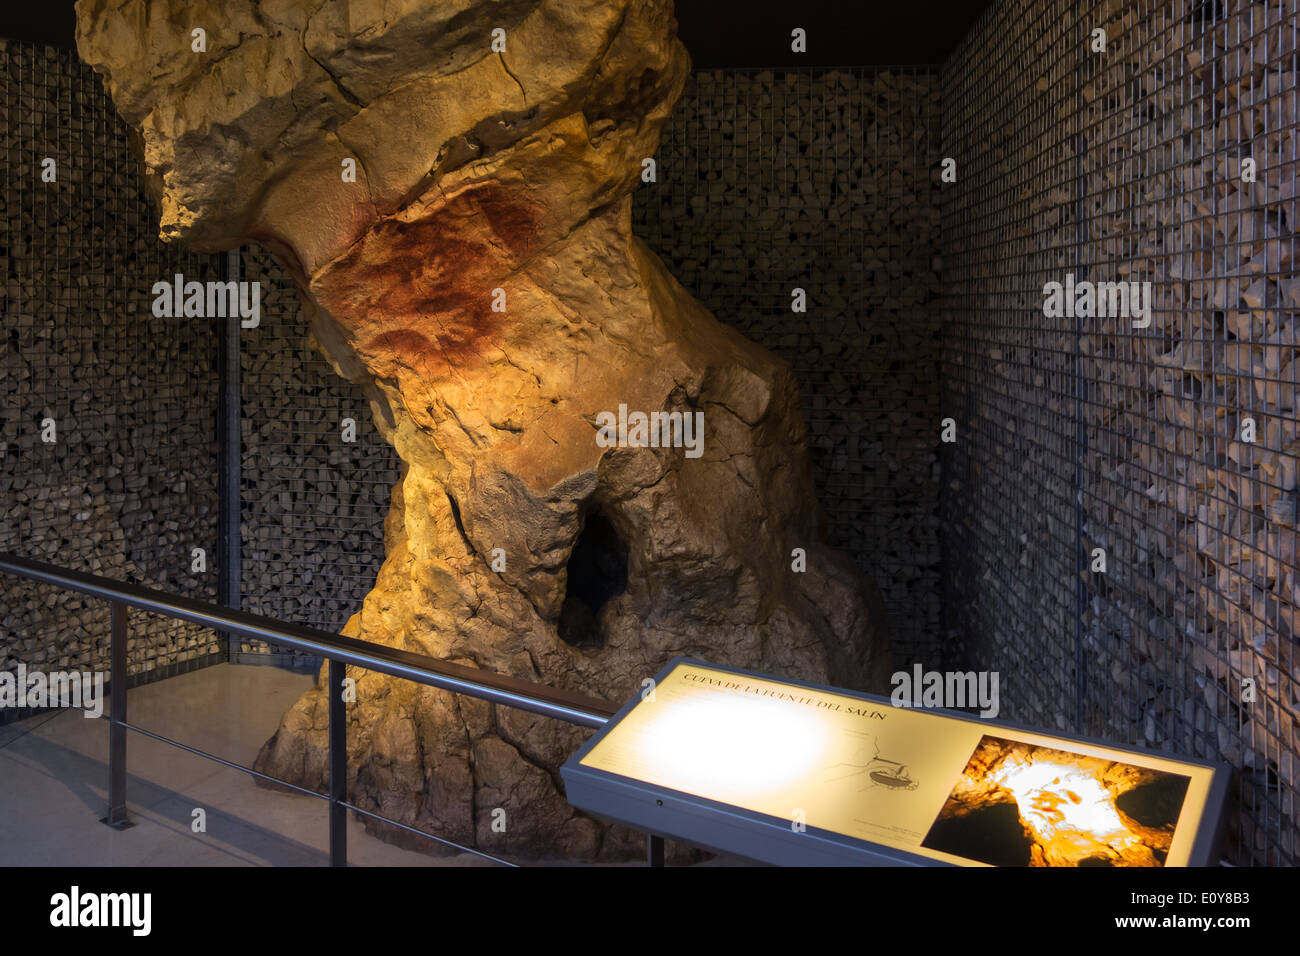 Réplique de la grotte d'Altamira montrant des mains humaines, Musée National et Centre de recherche d'Altamira, Santillana del Mar, Espagne Banque D'Images